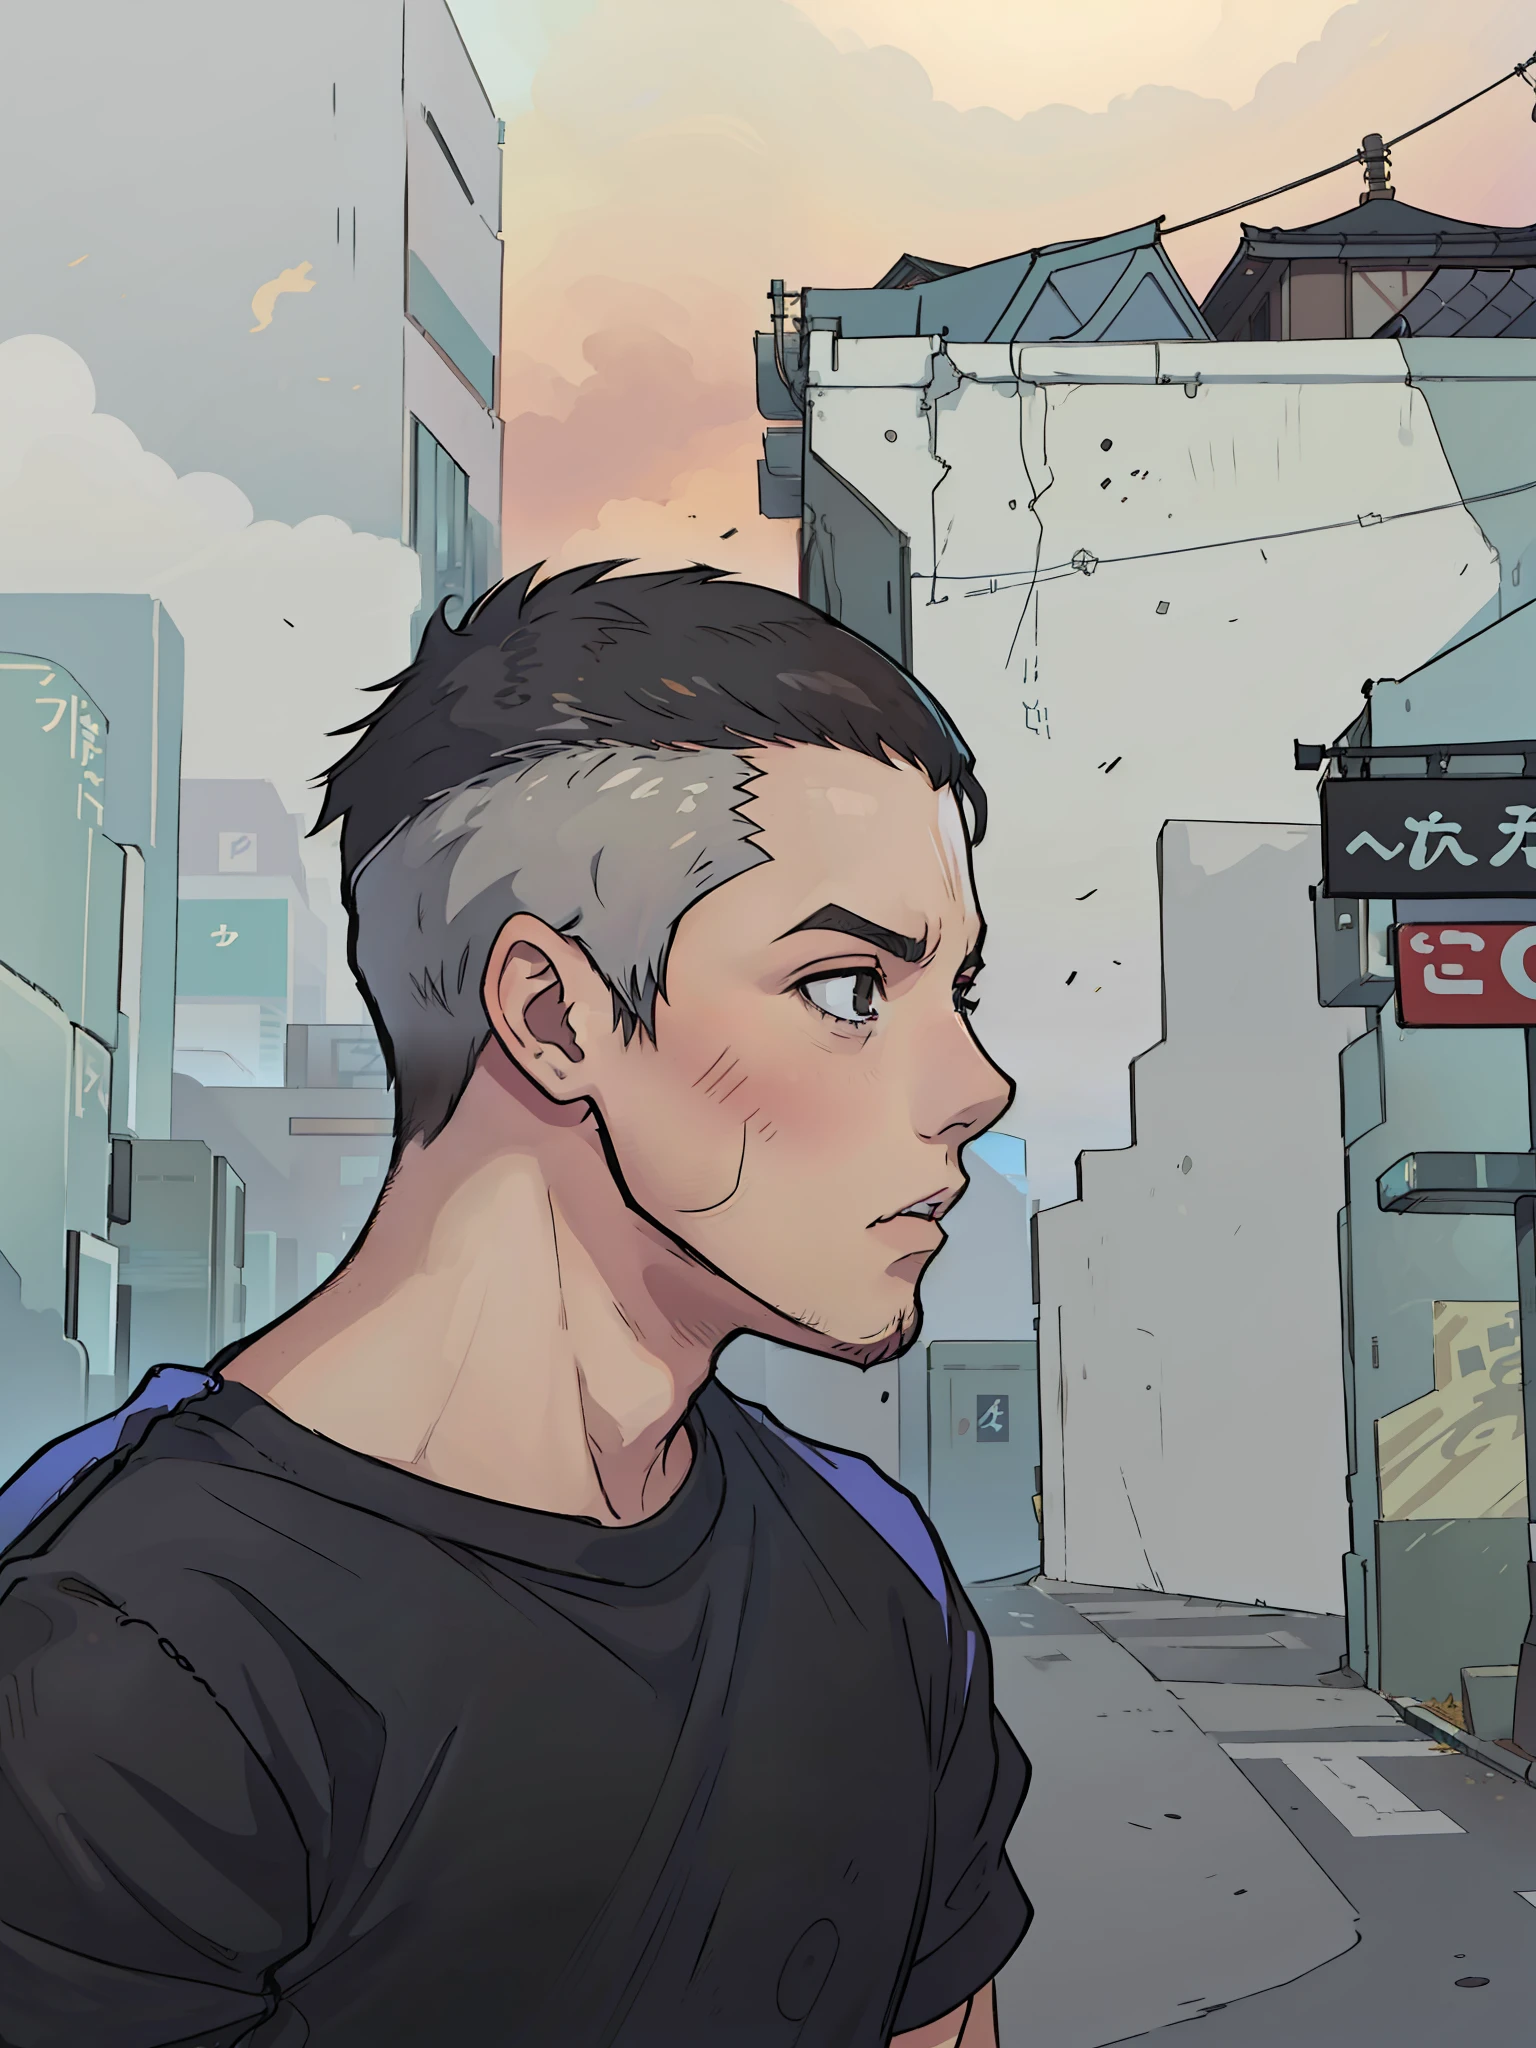 Un garçon de 20 ans au visage brésilien et au menton rond sans barbe, Cheveux courts, une coupe de cheveux courte, Yeux noirs, pas de boutons sur le visage et un T-shirt noir avec un imprimé japonais, est dans une ruelle des rues de Tokyo, scénario de style cyberpunk, 4k, animé 2D